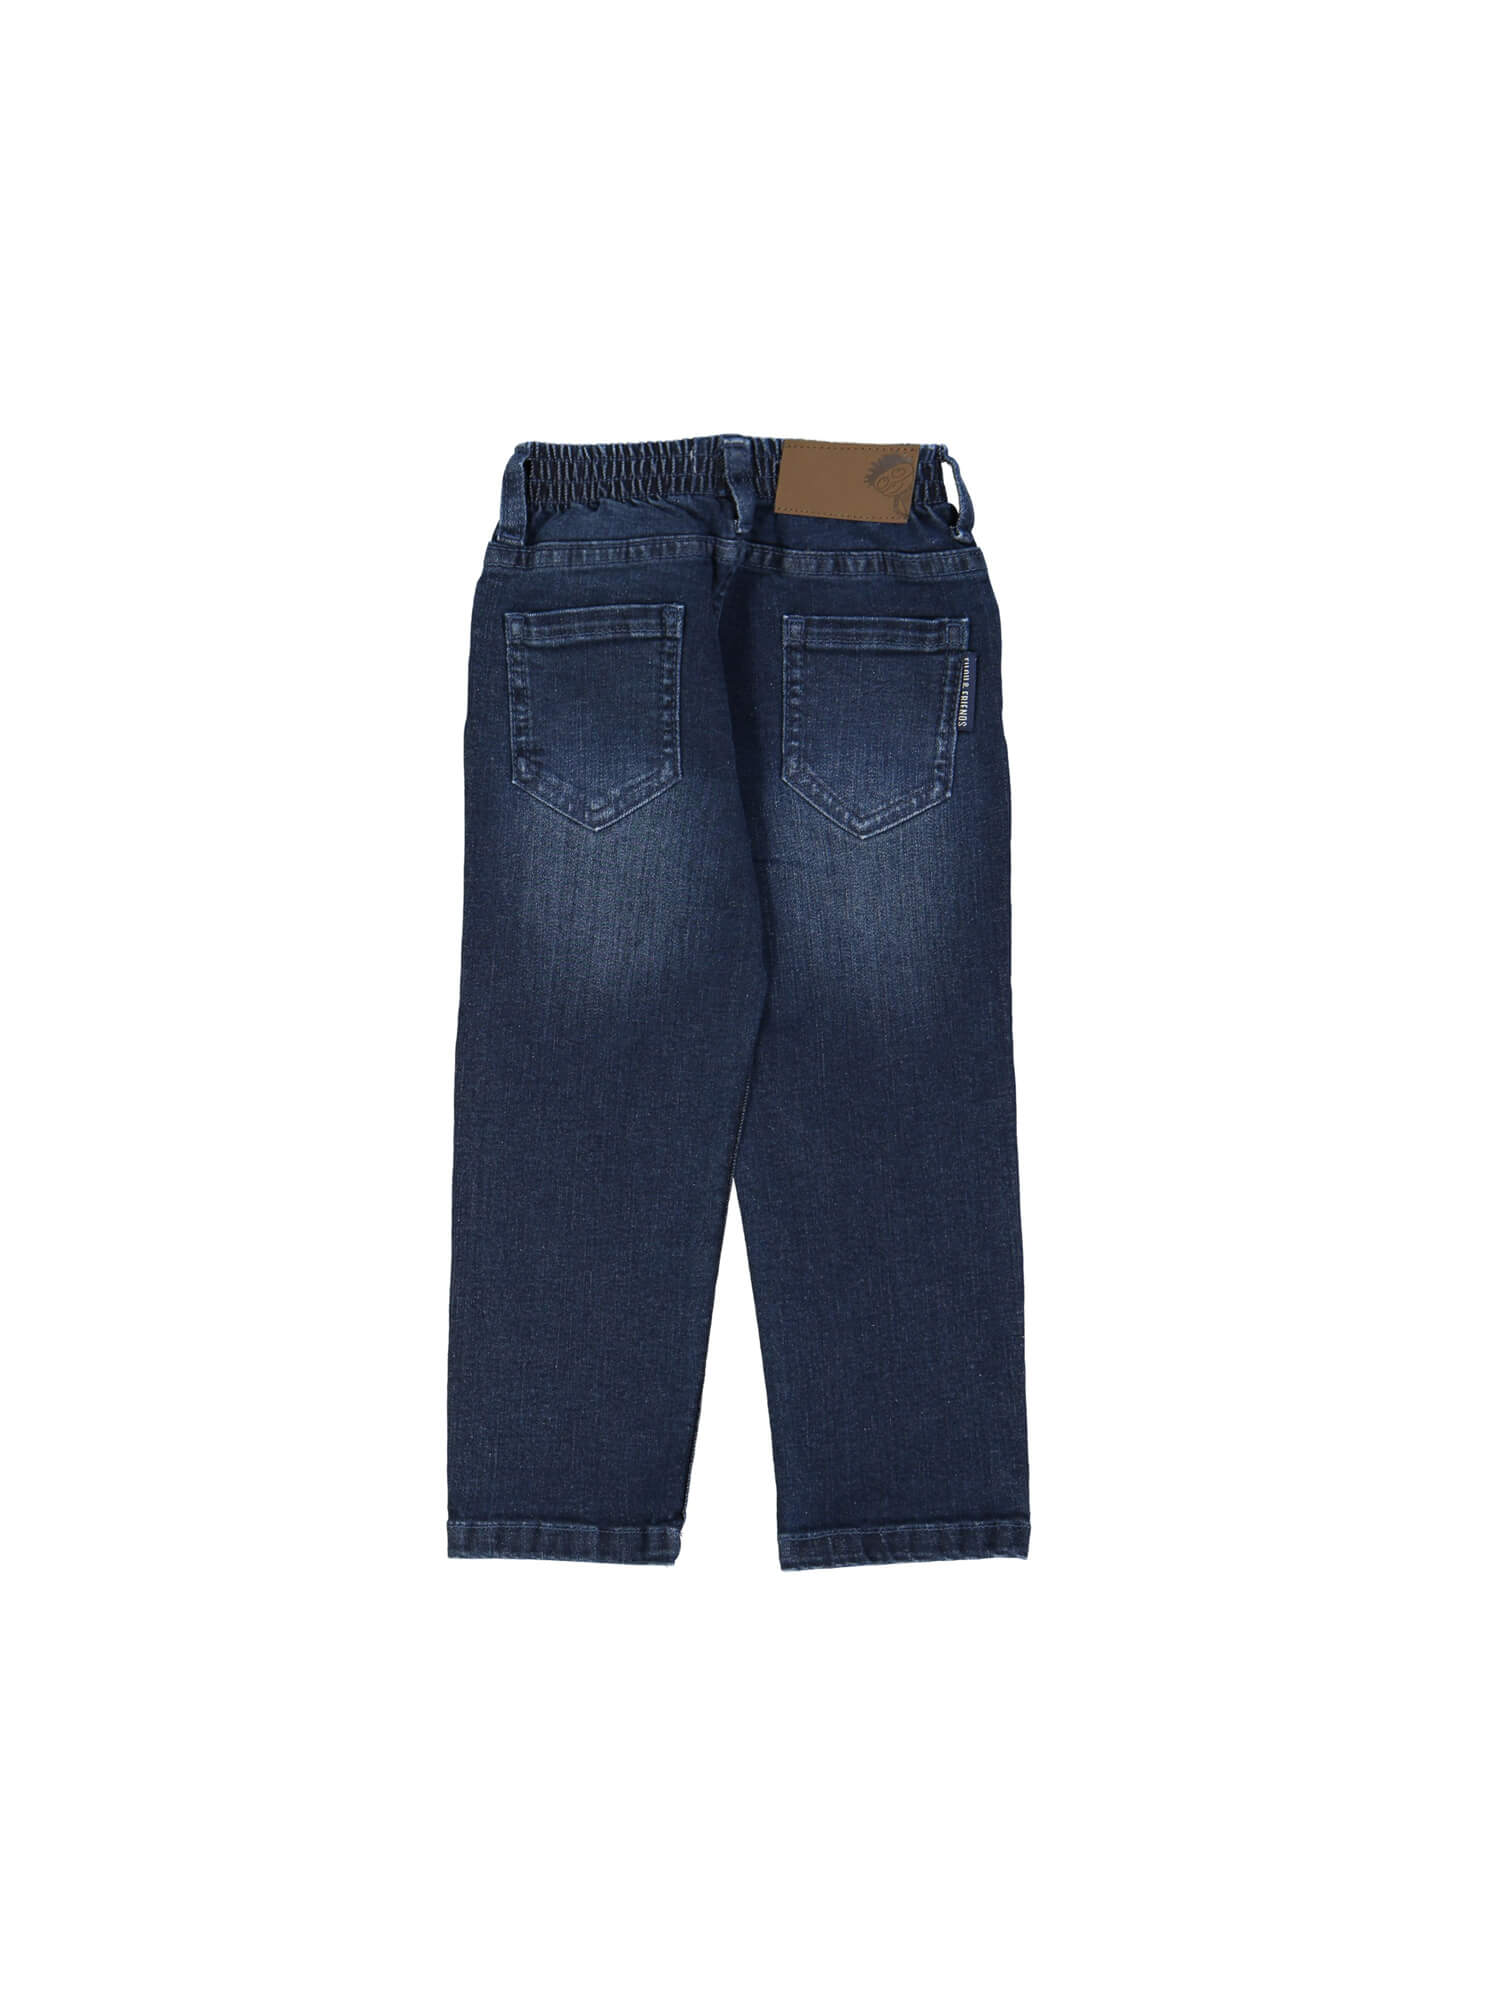 broek regular jeans blauw 03j